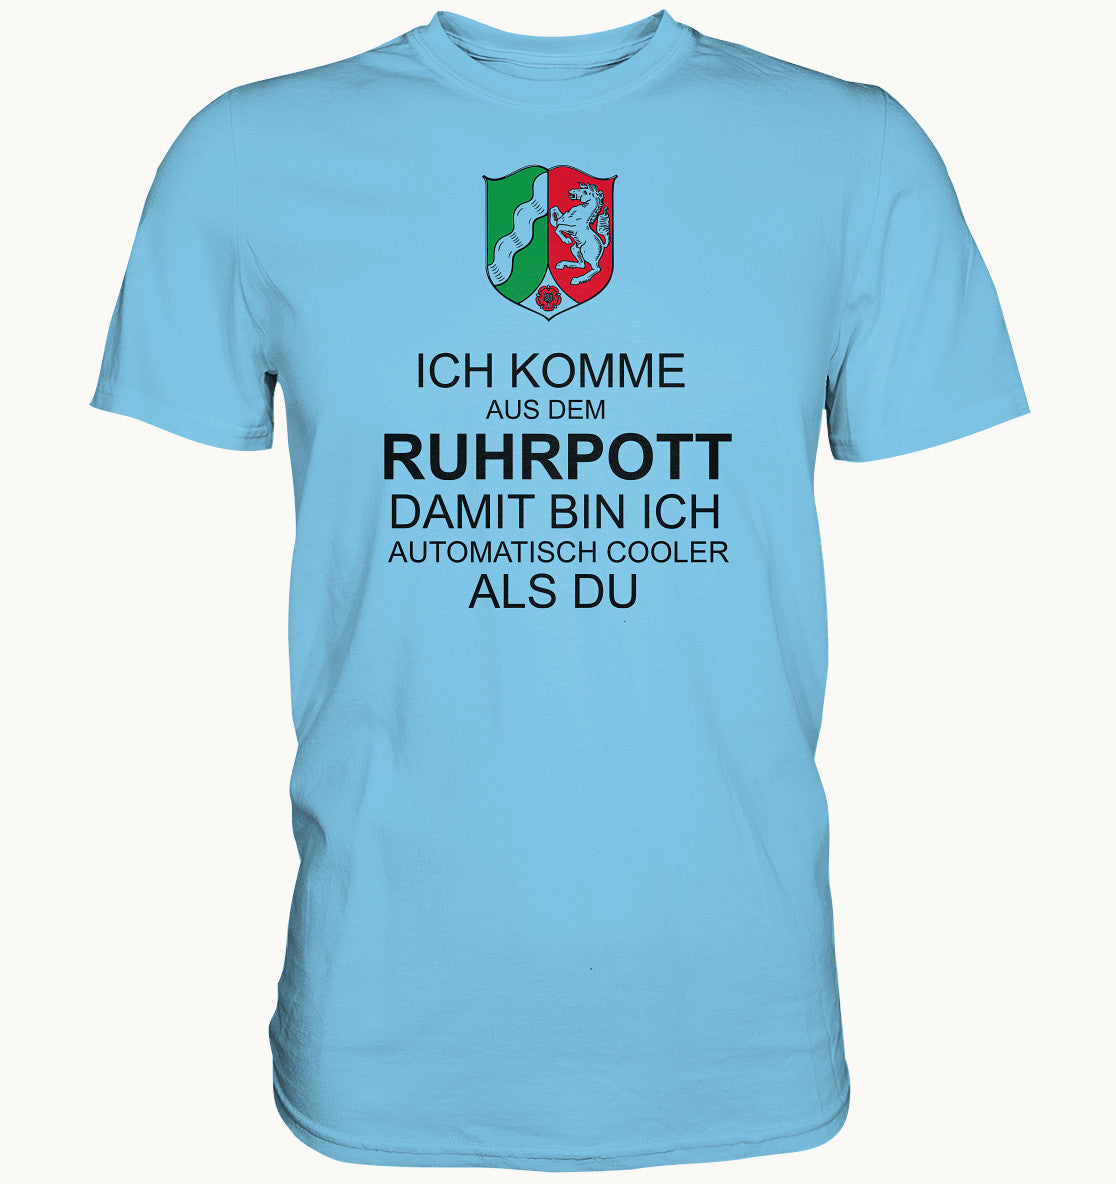 Ich komme aus dem Ruhrpott damit bin ich automatisch cooler als du - Premium Shirt - Baufun Shop